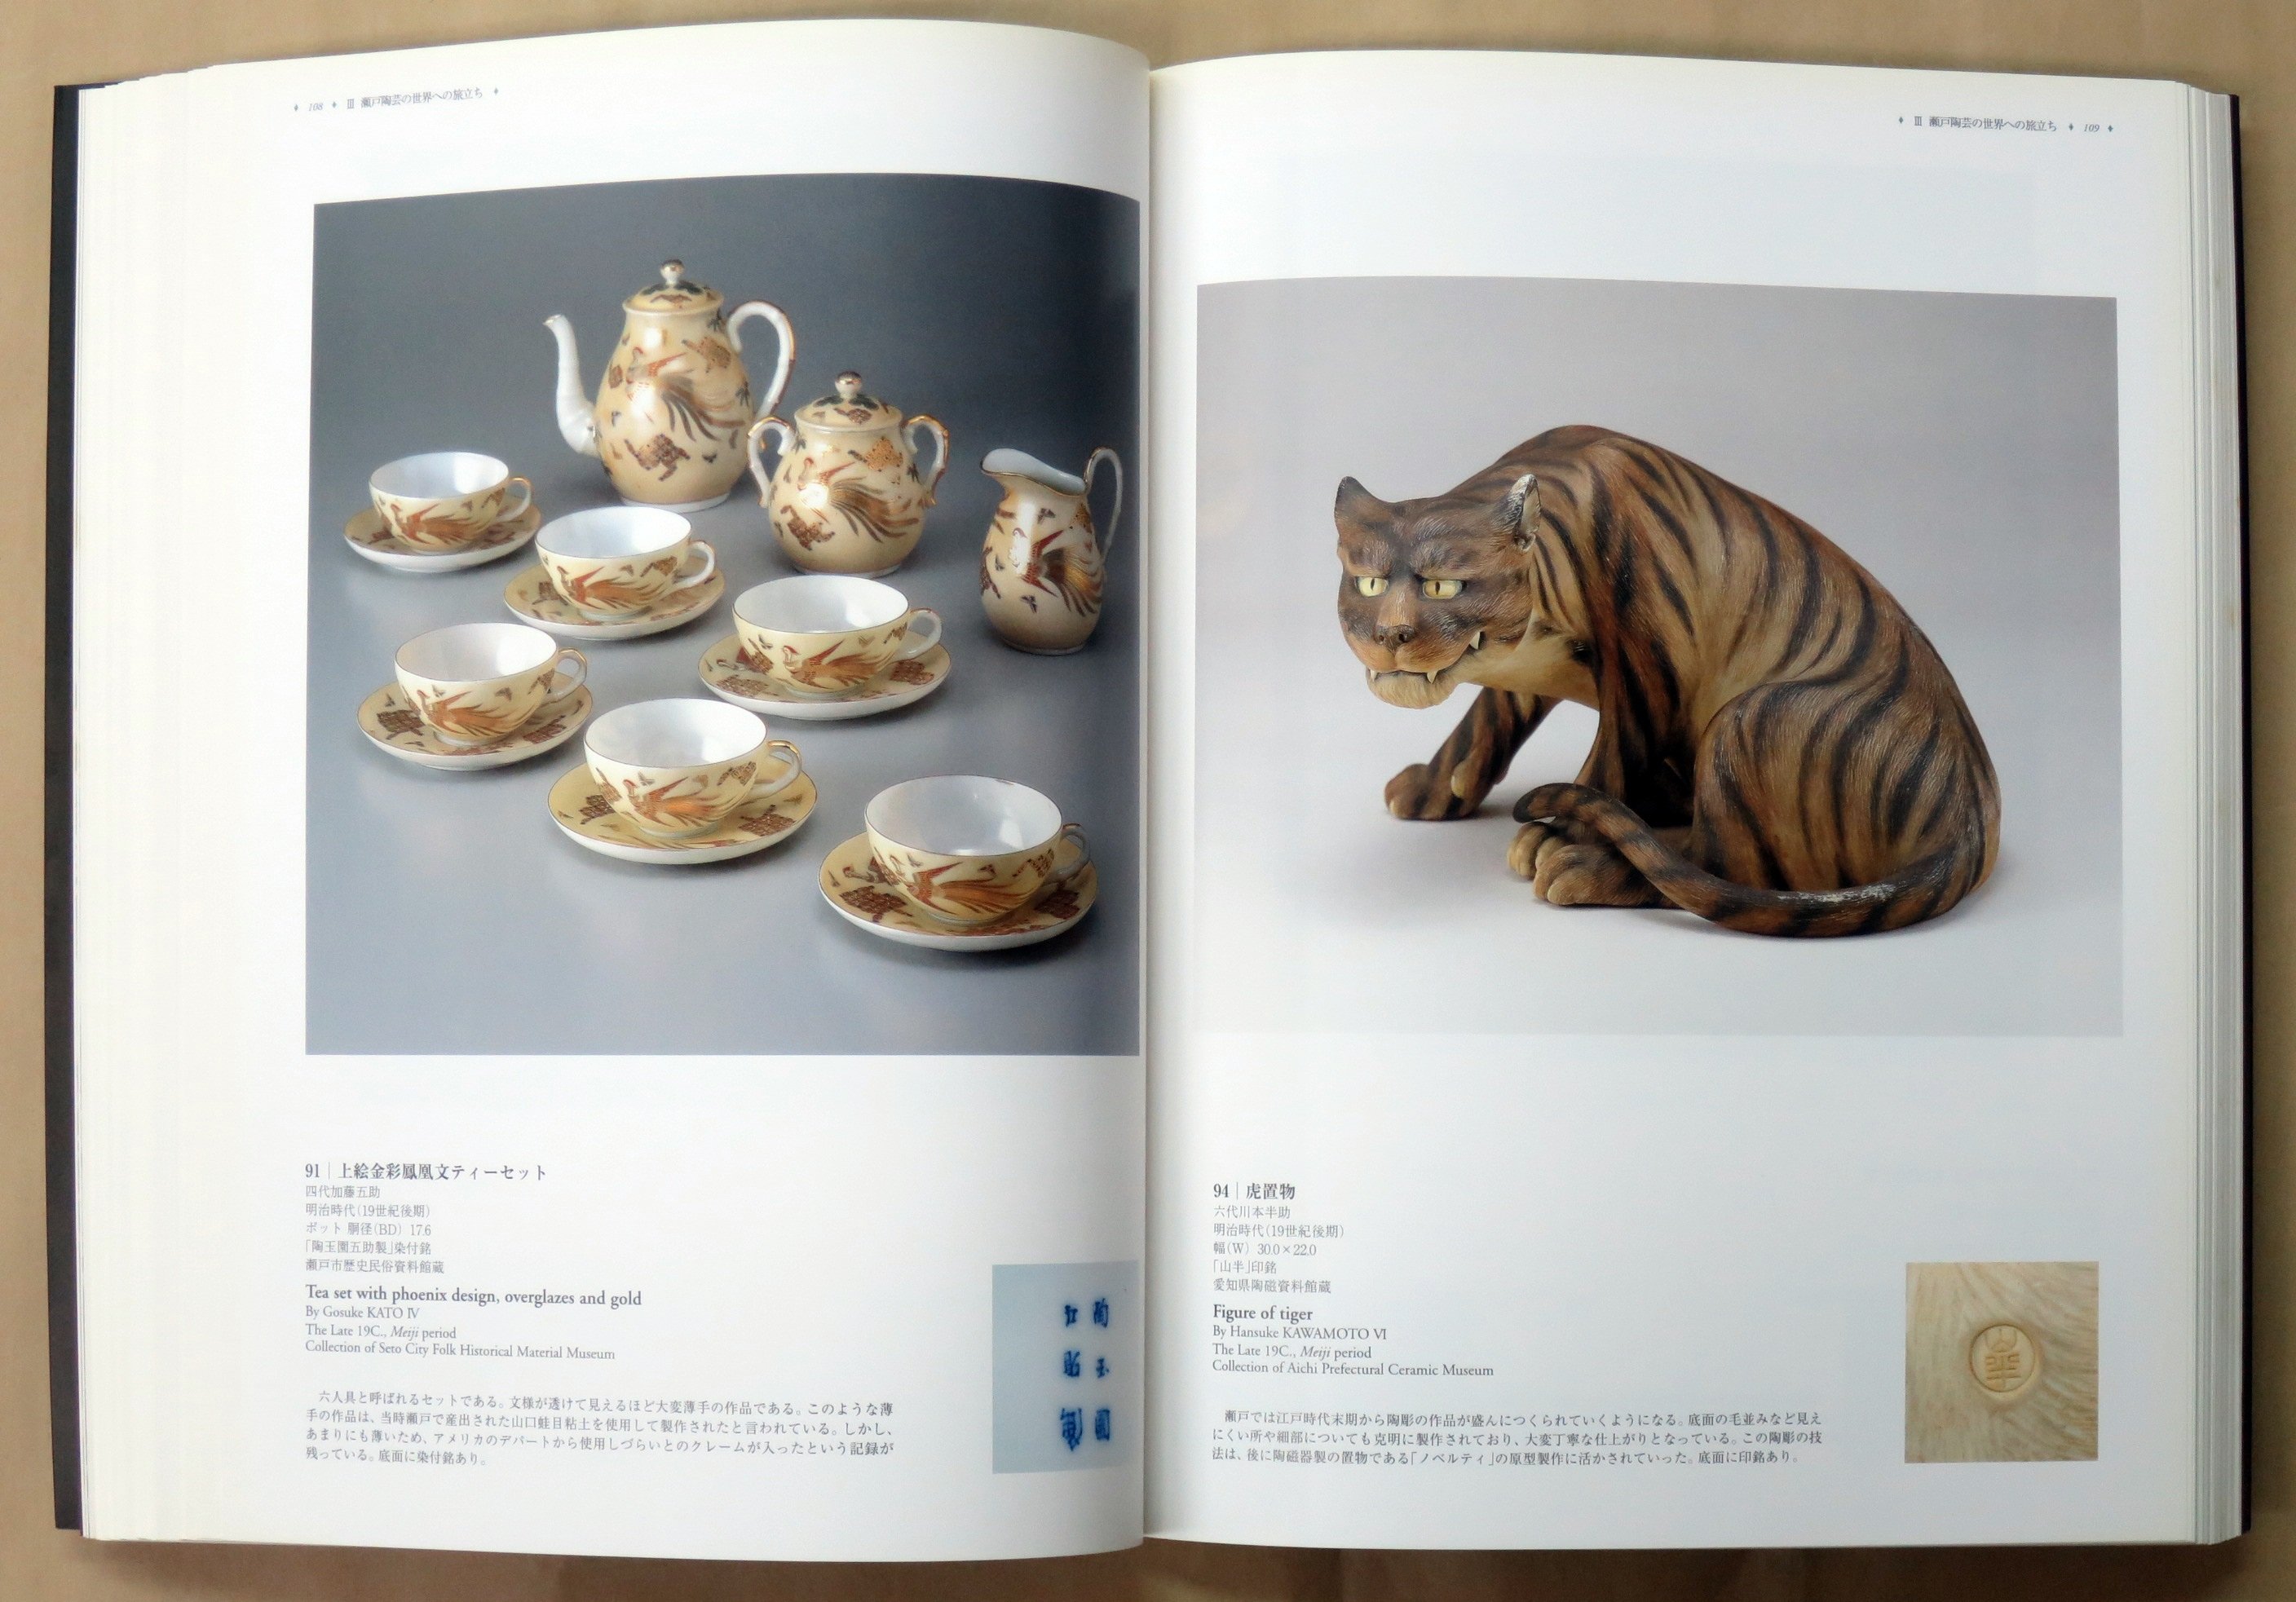 瀬戶陶藝の精華展2005年日本國際博覽會開催記念(平裝)(絕版) | Yahoo